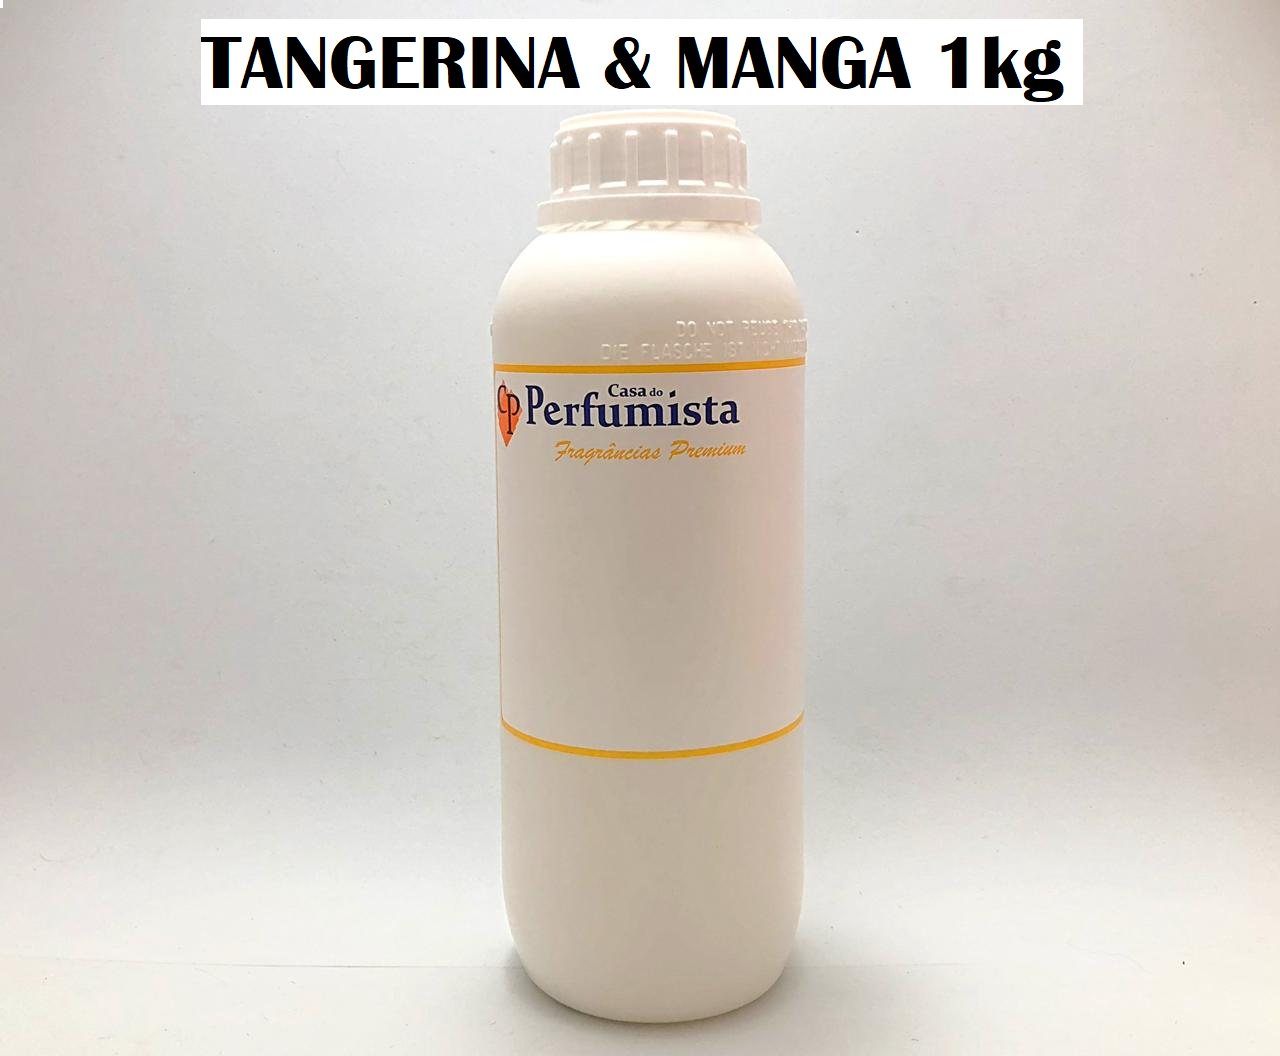 TANGERINA E MANGA - 1kg